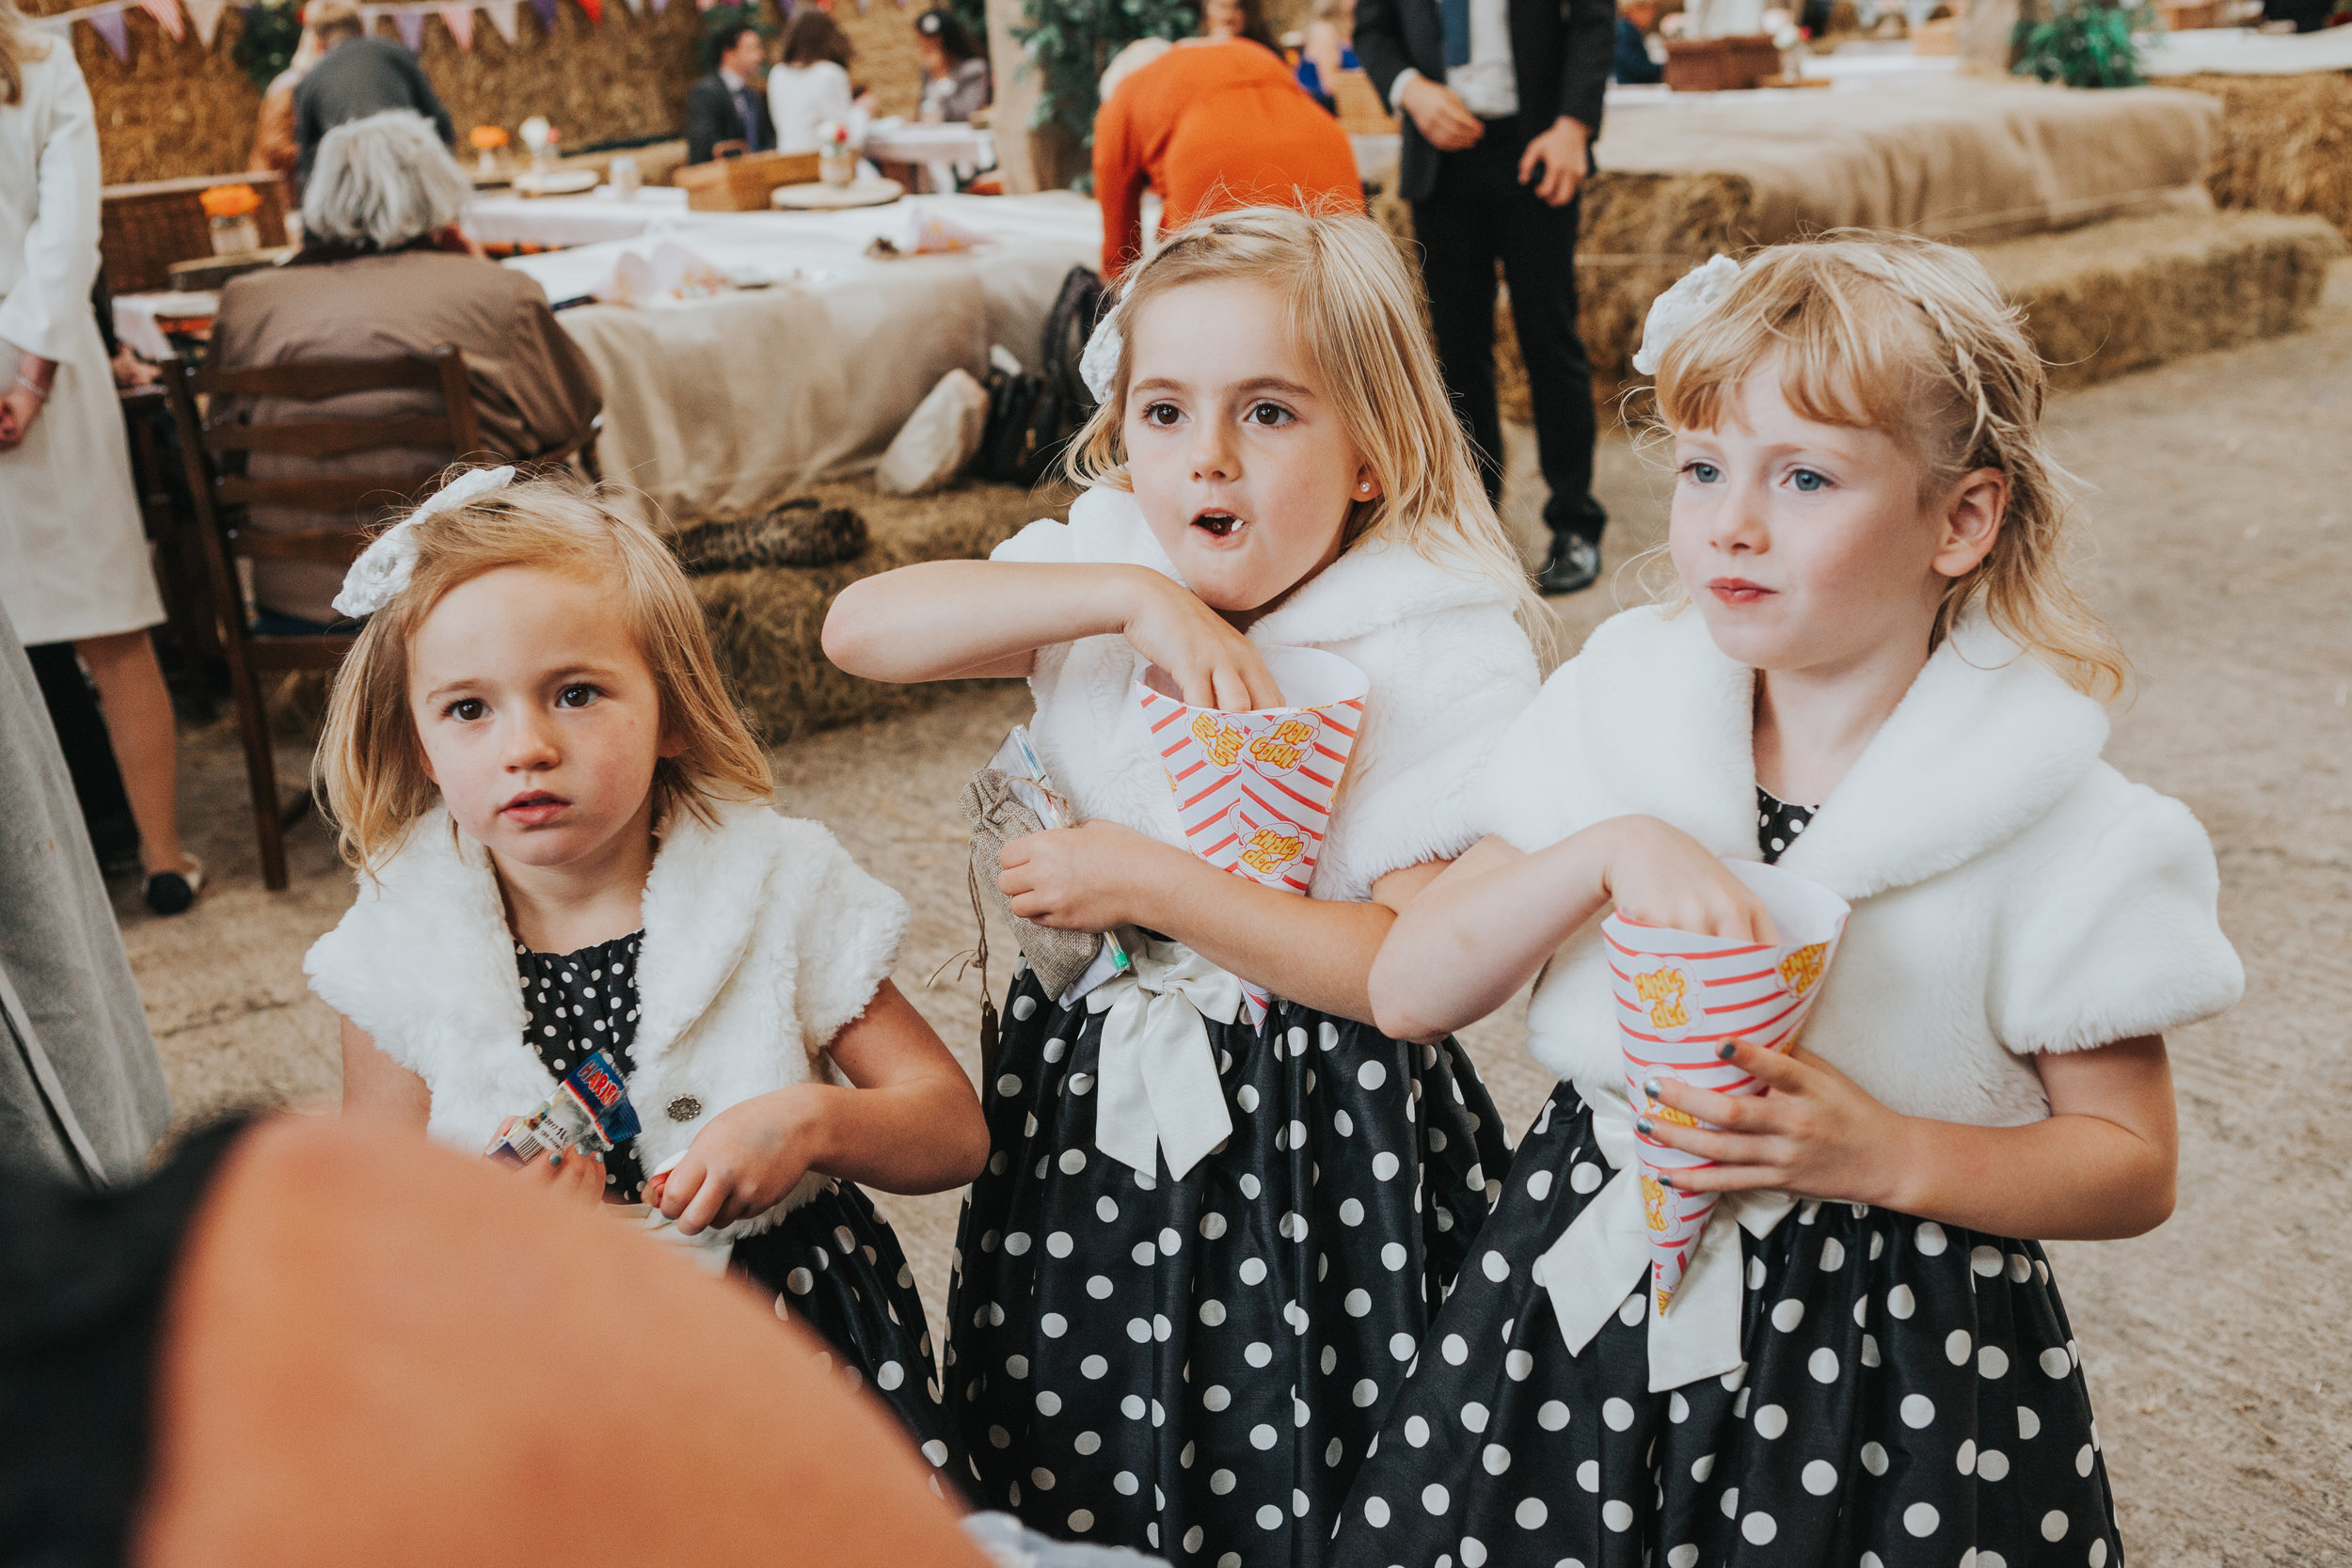  Kids eating popcorn at wedding 